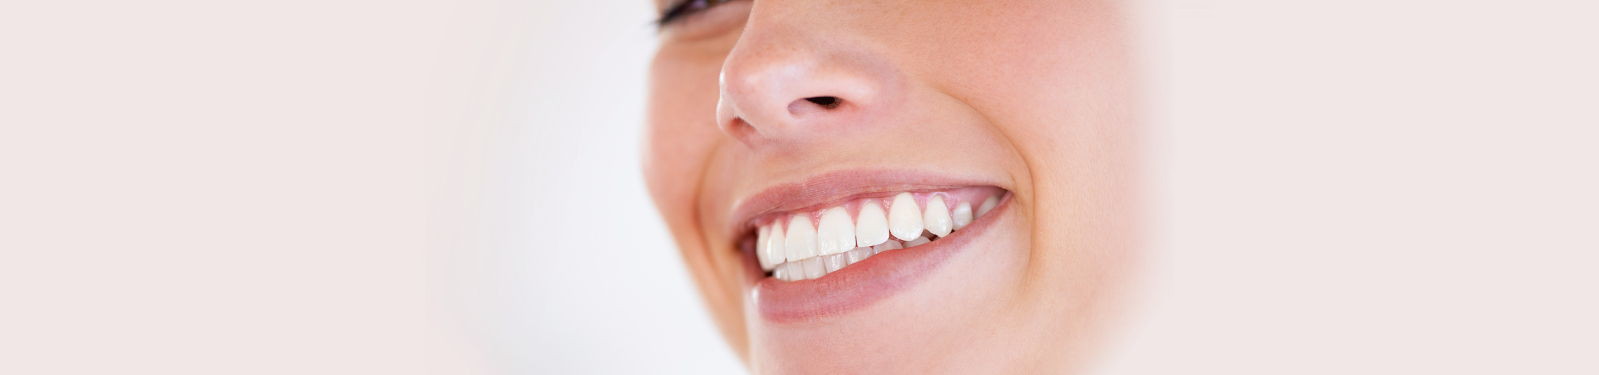 Zahnästhetik Haidhausen in München | für ein schönes Lächeln